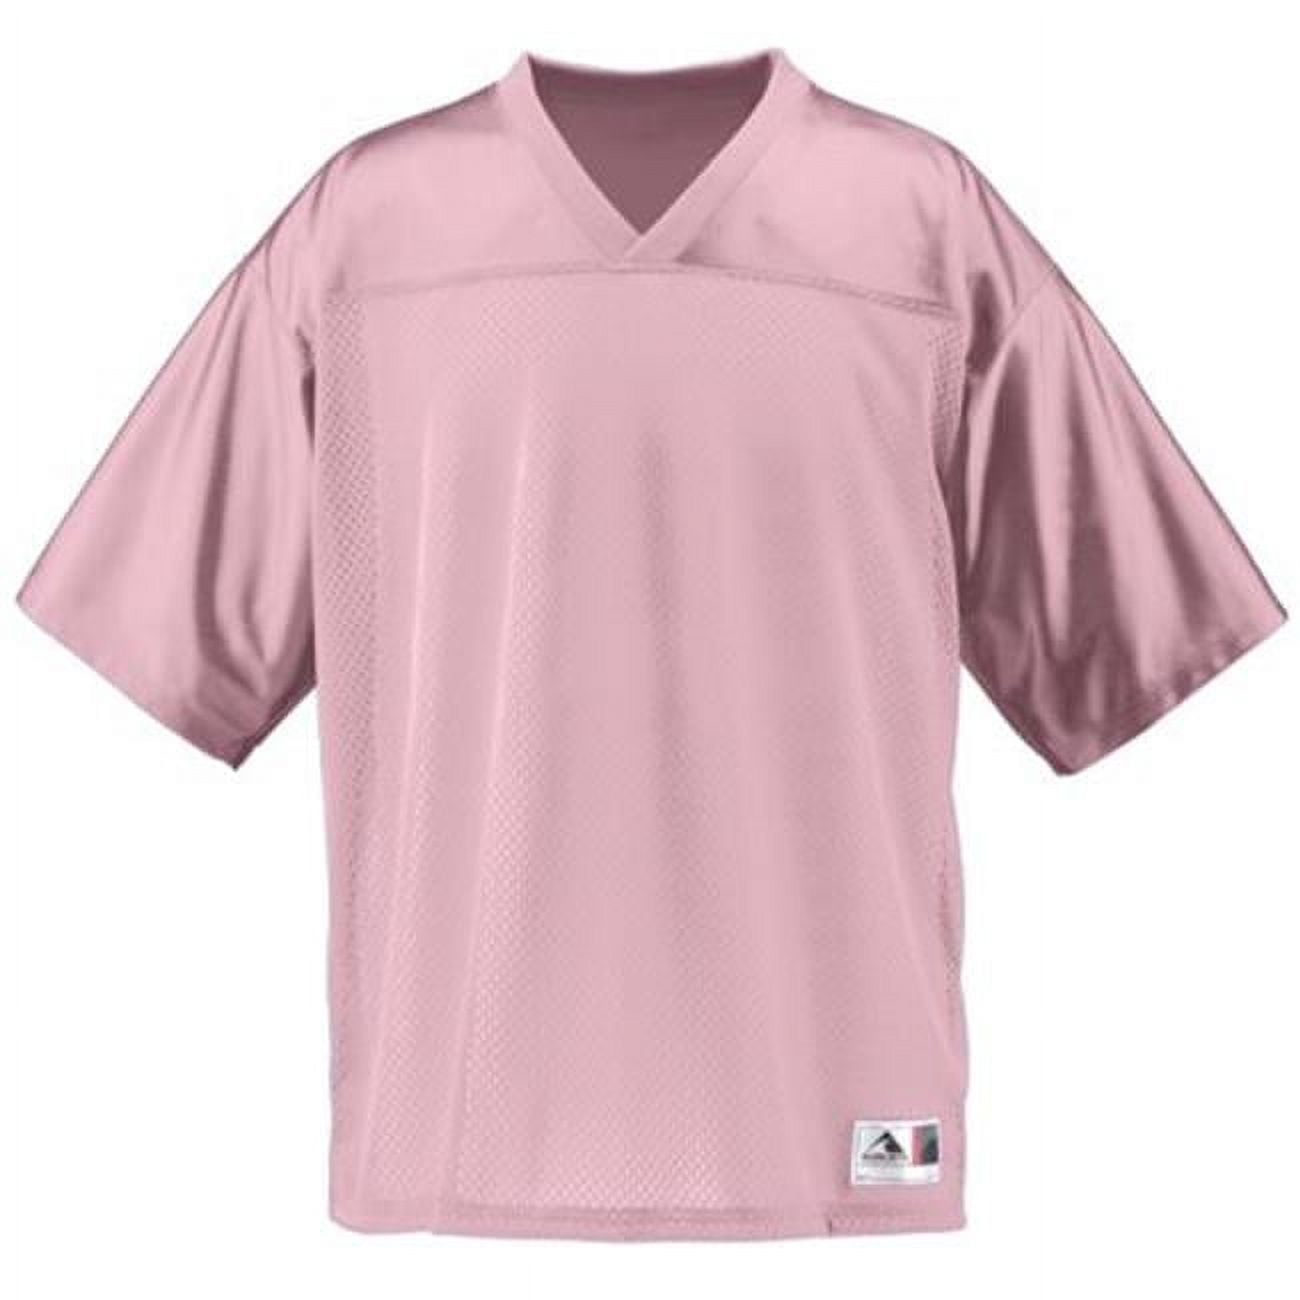 football light pink jersey